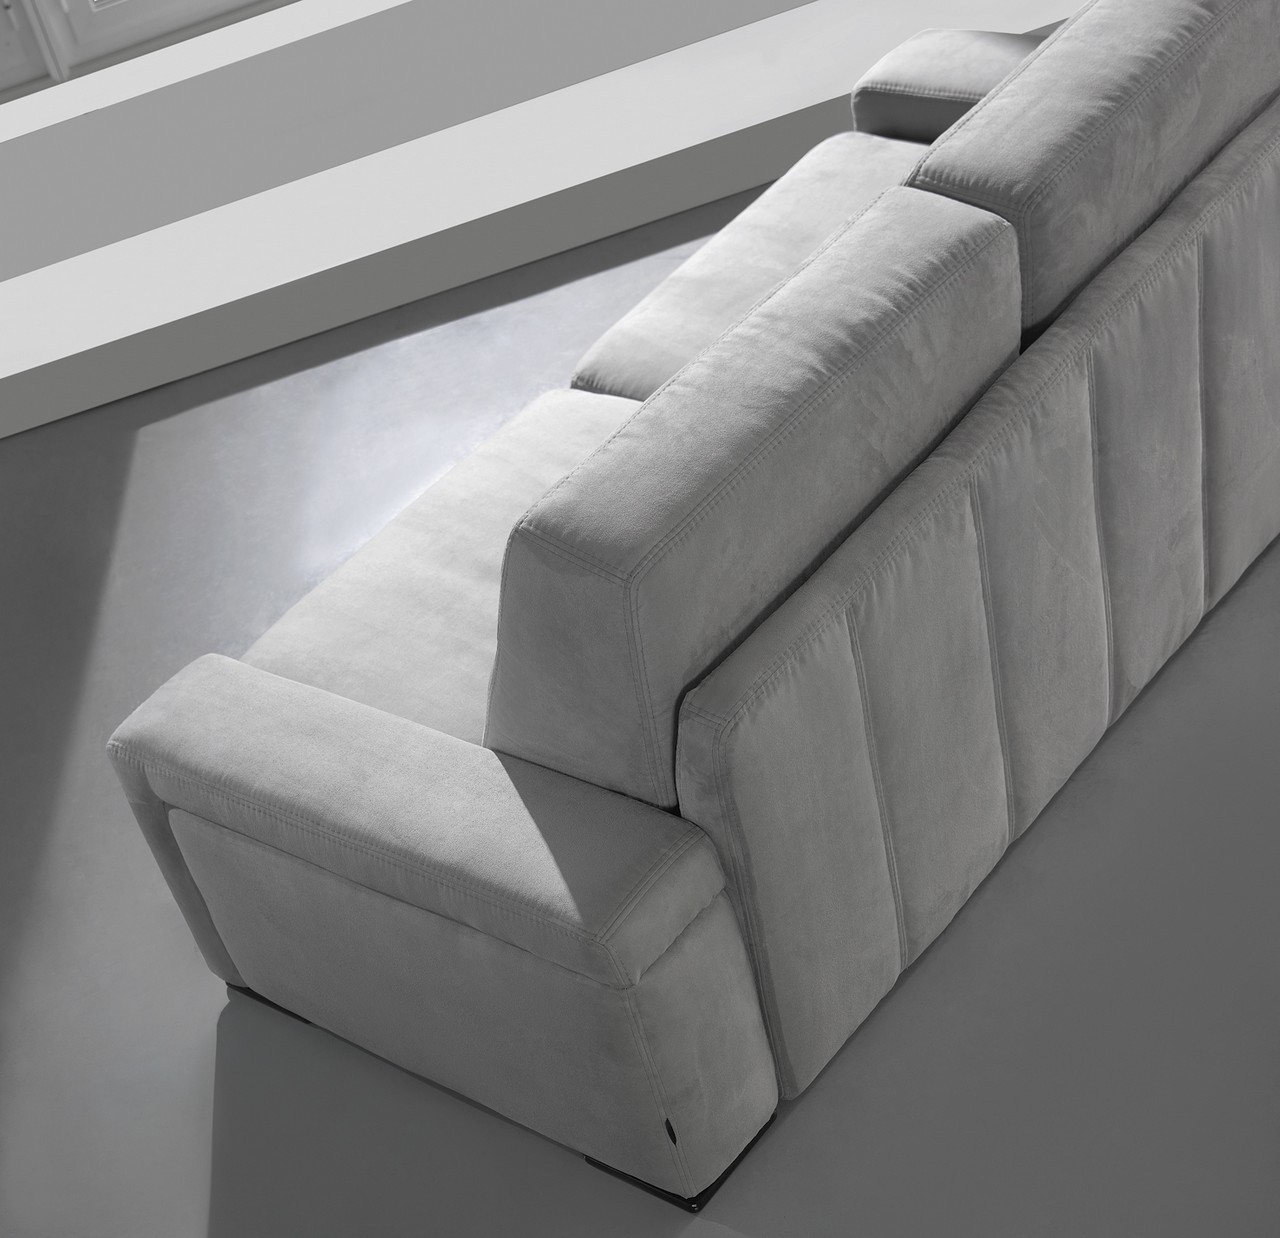 Aproveite o espaço e o conforto do sofá Cama Katia! Um sofá moderno e versátil que lhe trará ainda mais comodidade para os seus dias.